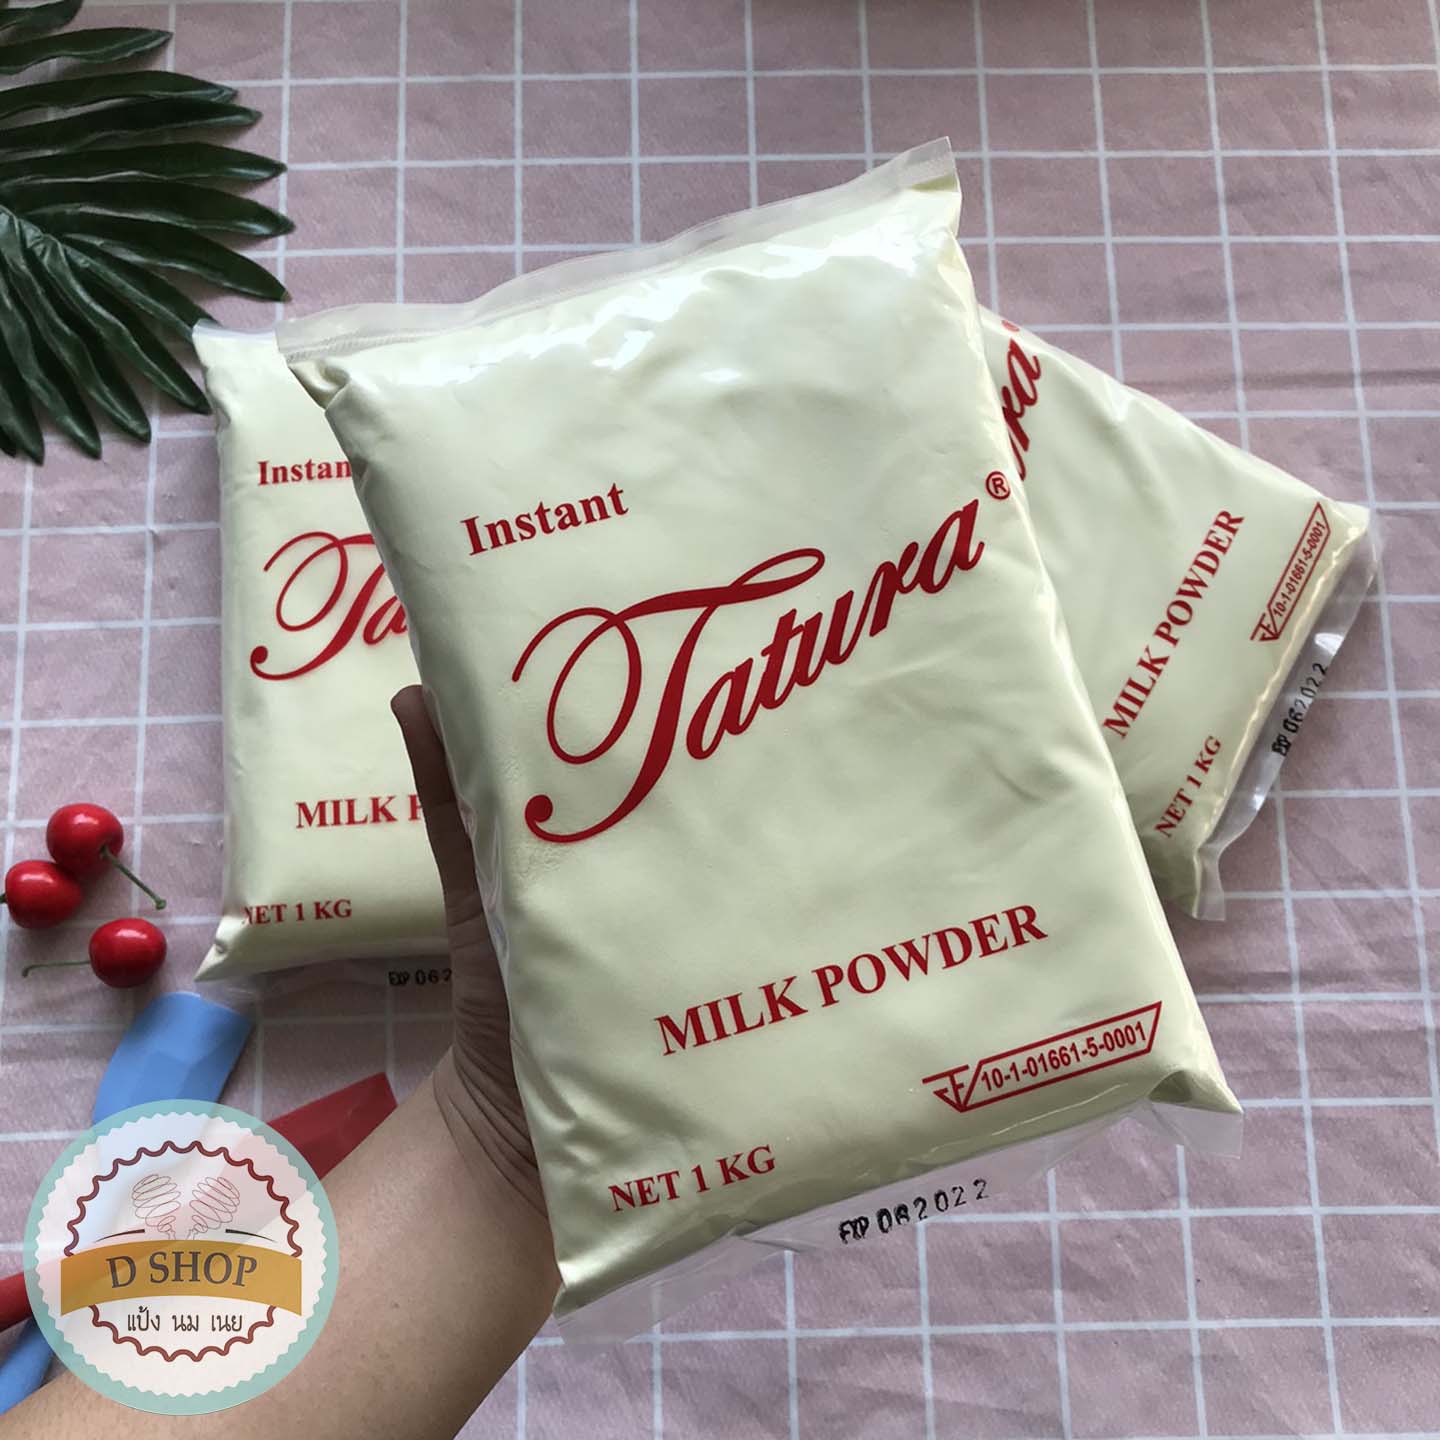 รูปภาพเพิ่มเติมเกี่ยวกับ หัวนมผง นมผงตาตูล่า 1 กิโลกรัม นมผง นมผงทาทูร่า นมผงเต็มมันเนย Instant Tatura Milk Powder นมผงสำหรับเบเกอรี่ Full cream milk powder นมผงแท้ 100% ตาตูร่า